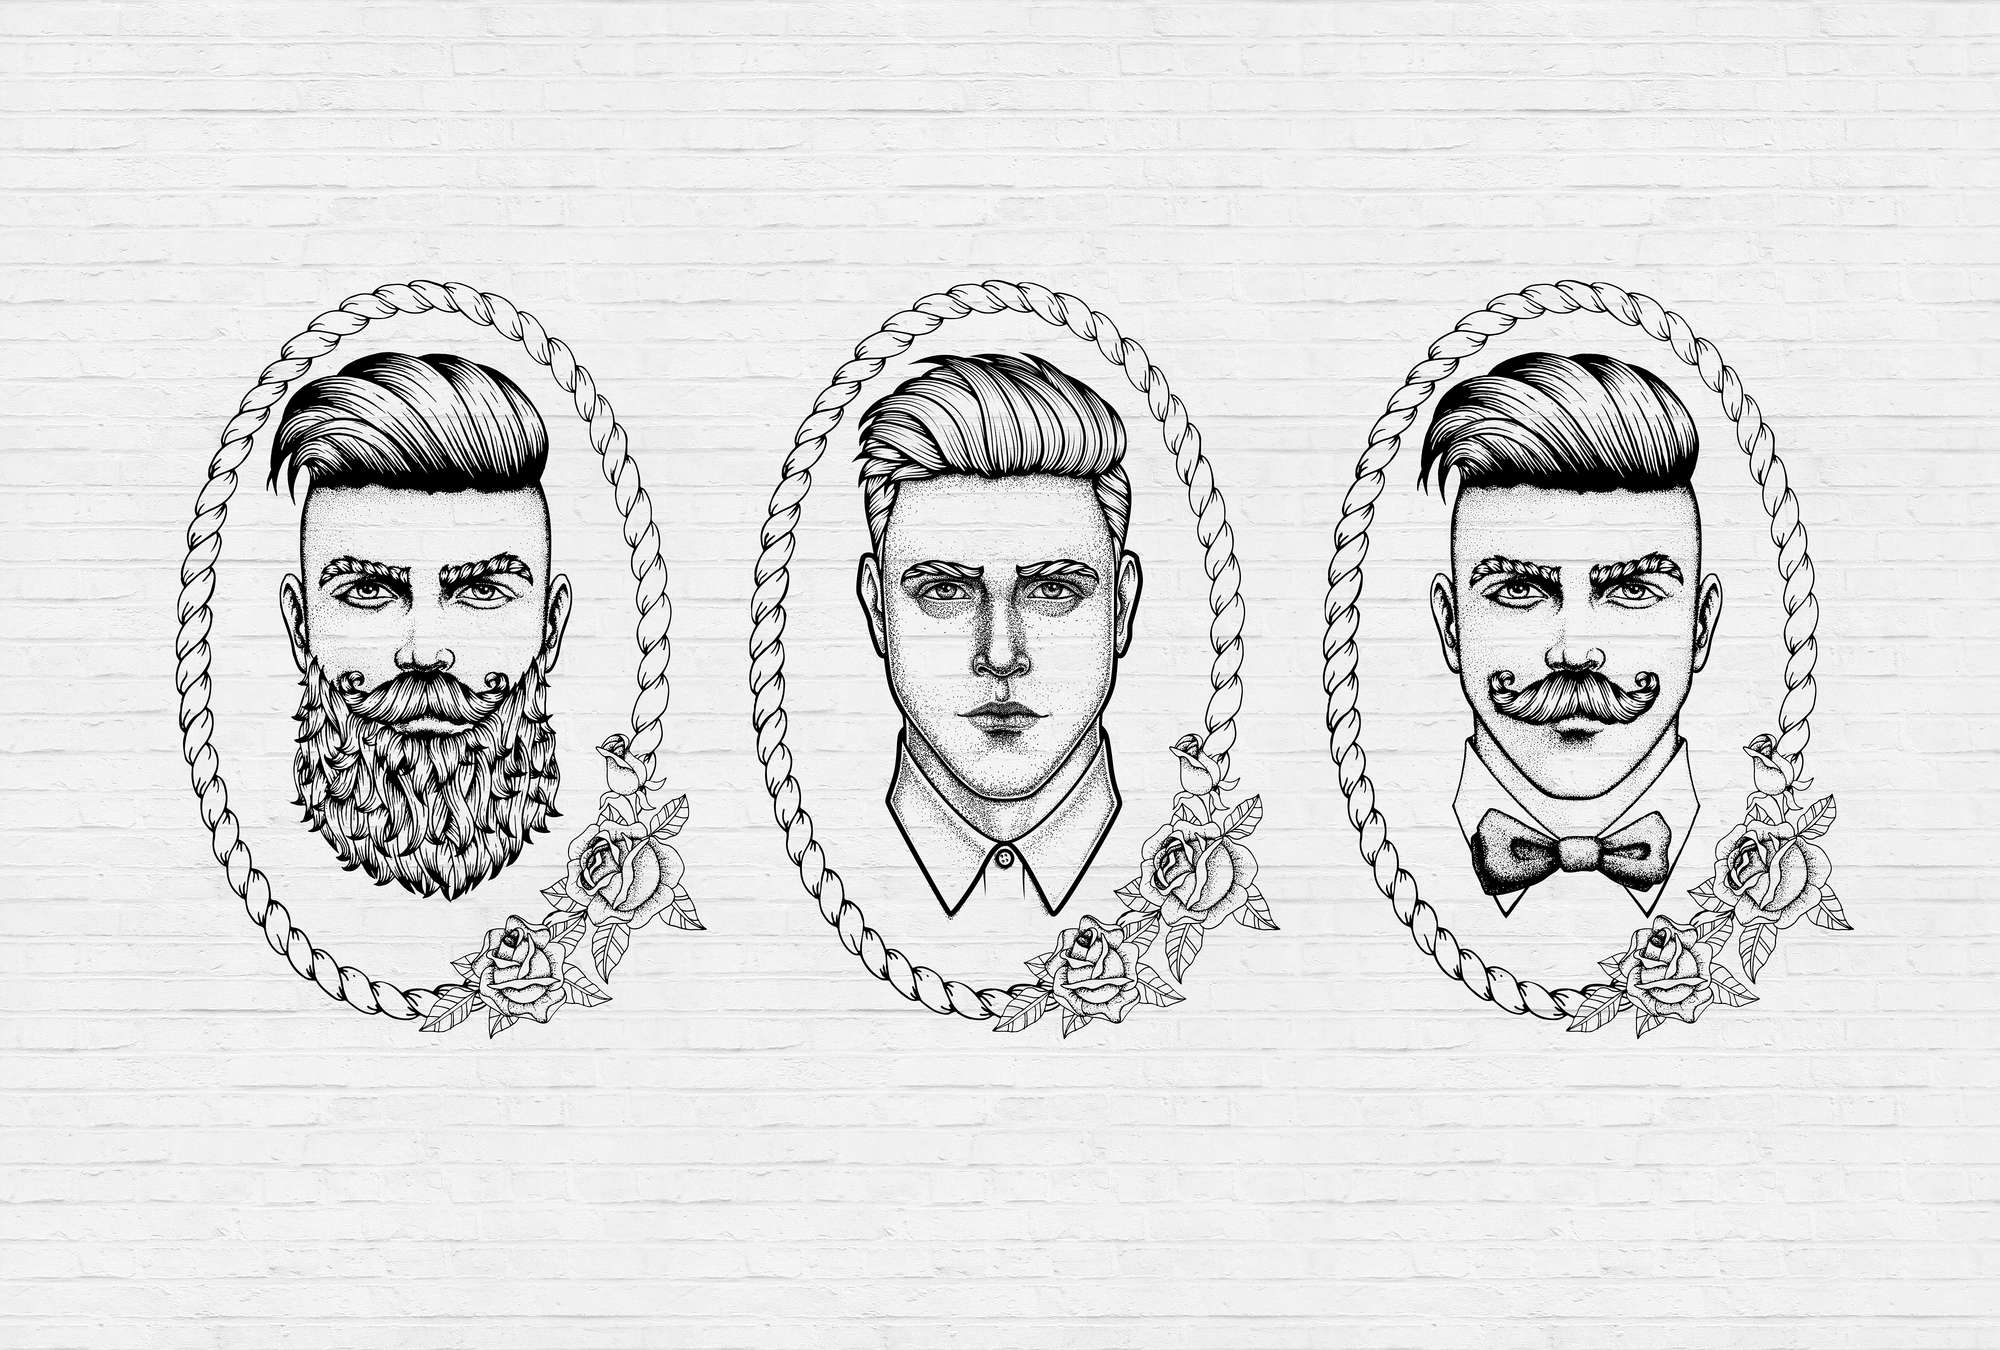             Photocopieur noir et blanc avec des portraits d'hommes dans le style BD
        